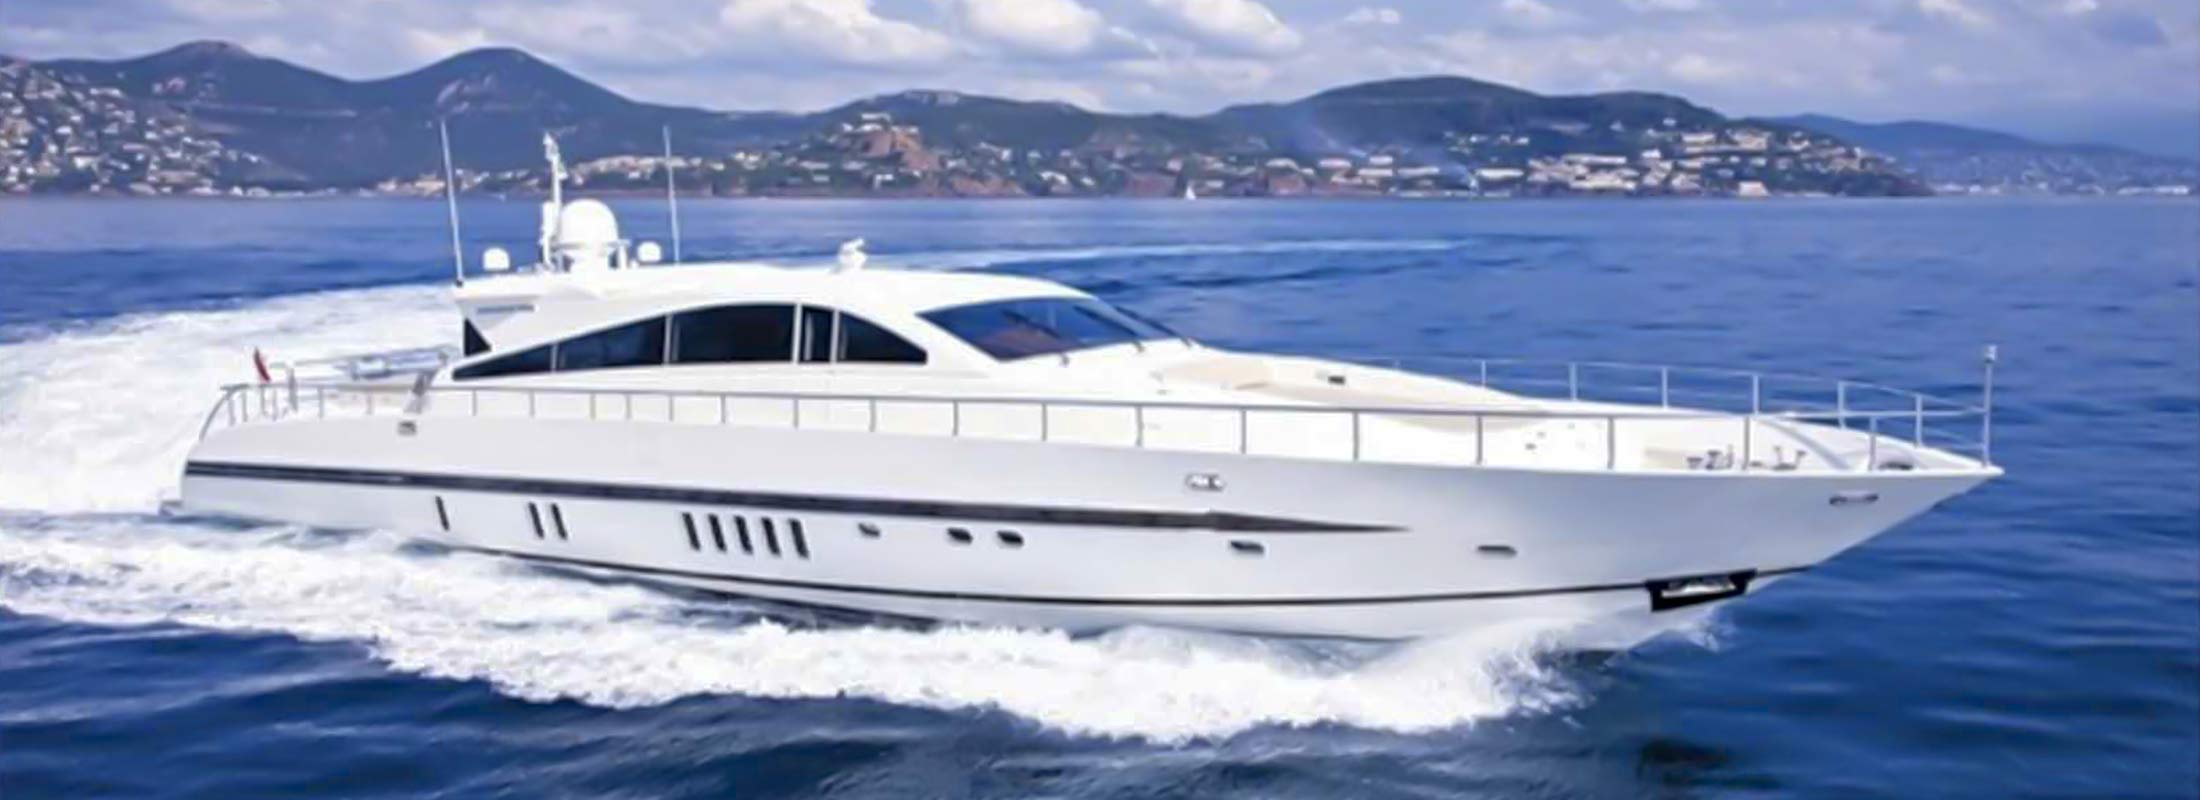 Doha Motor Yacht for Charter Mediterranean slider 1